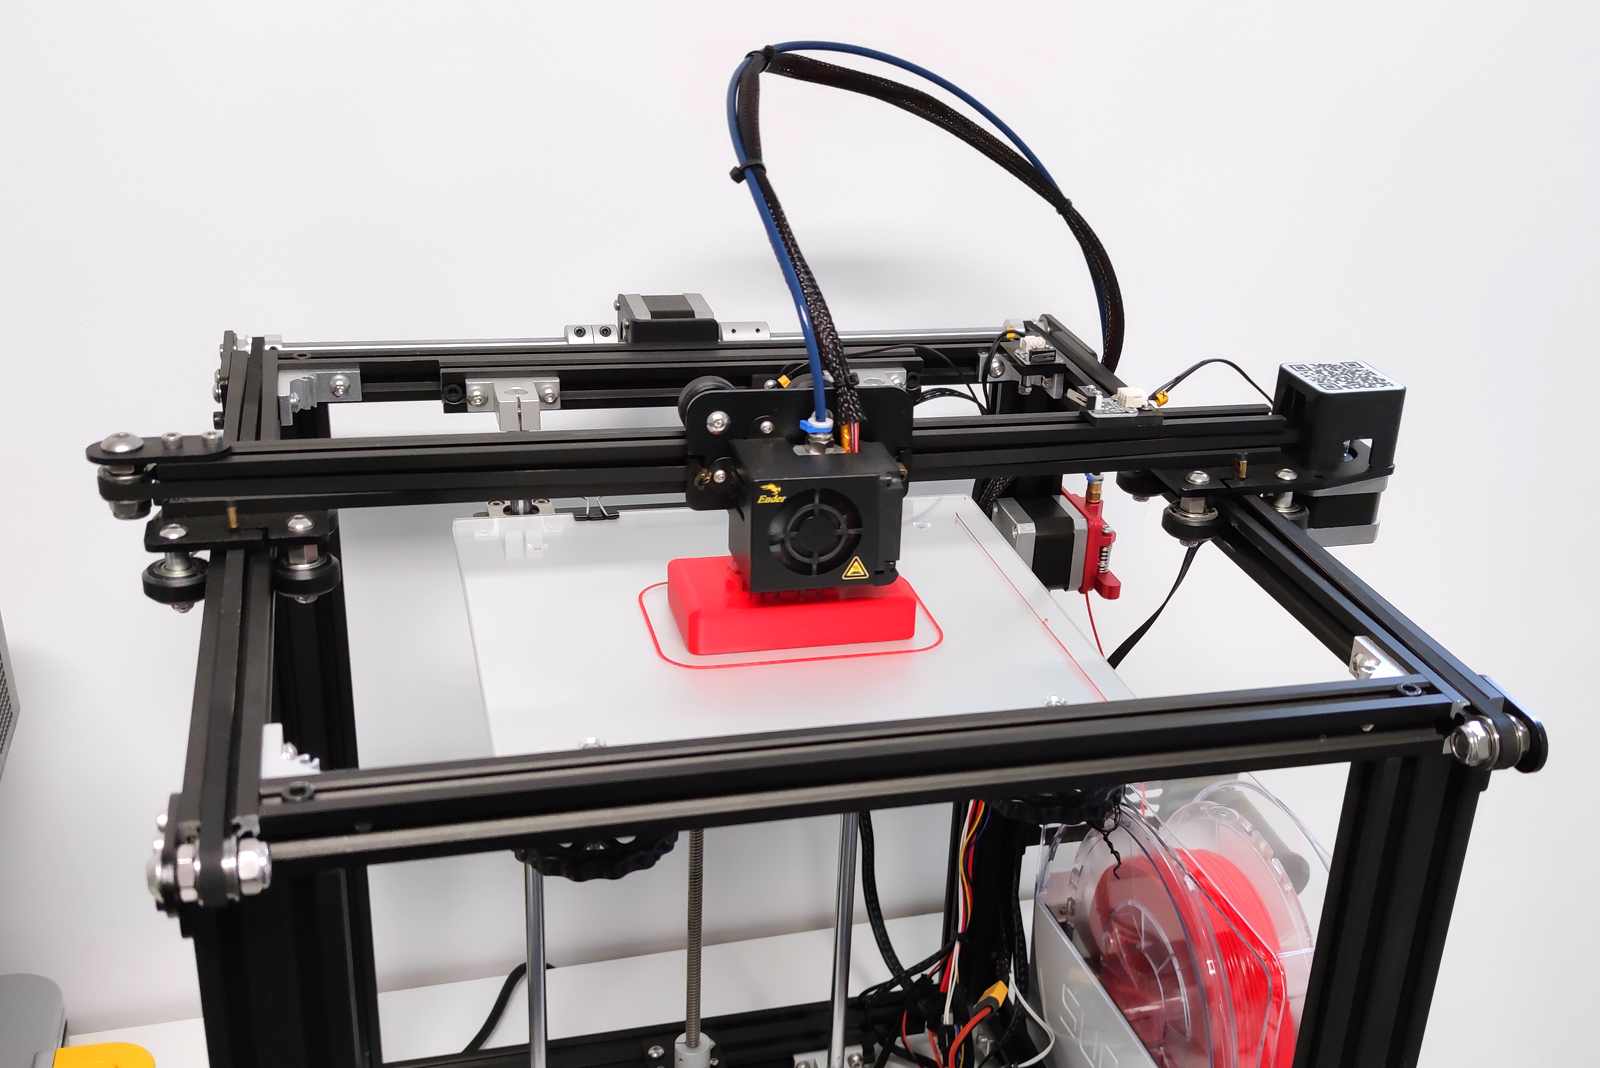 Imprimante 3D qui imprime un moule pour savon